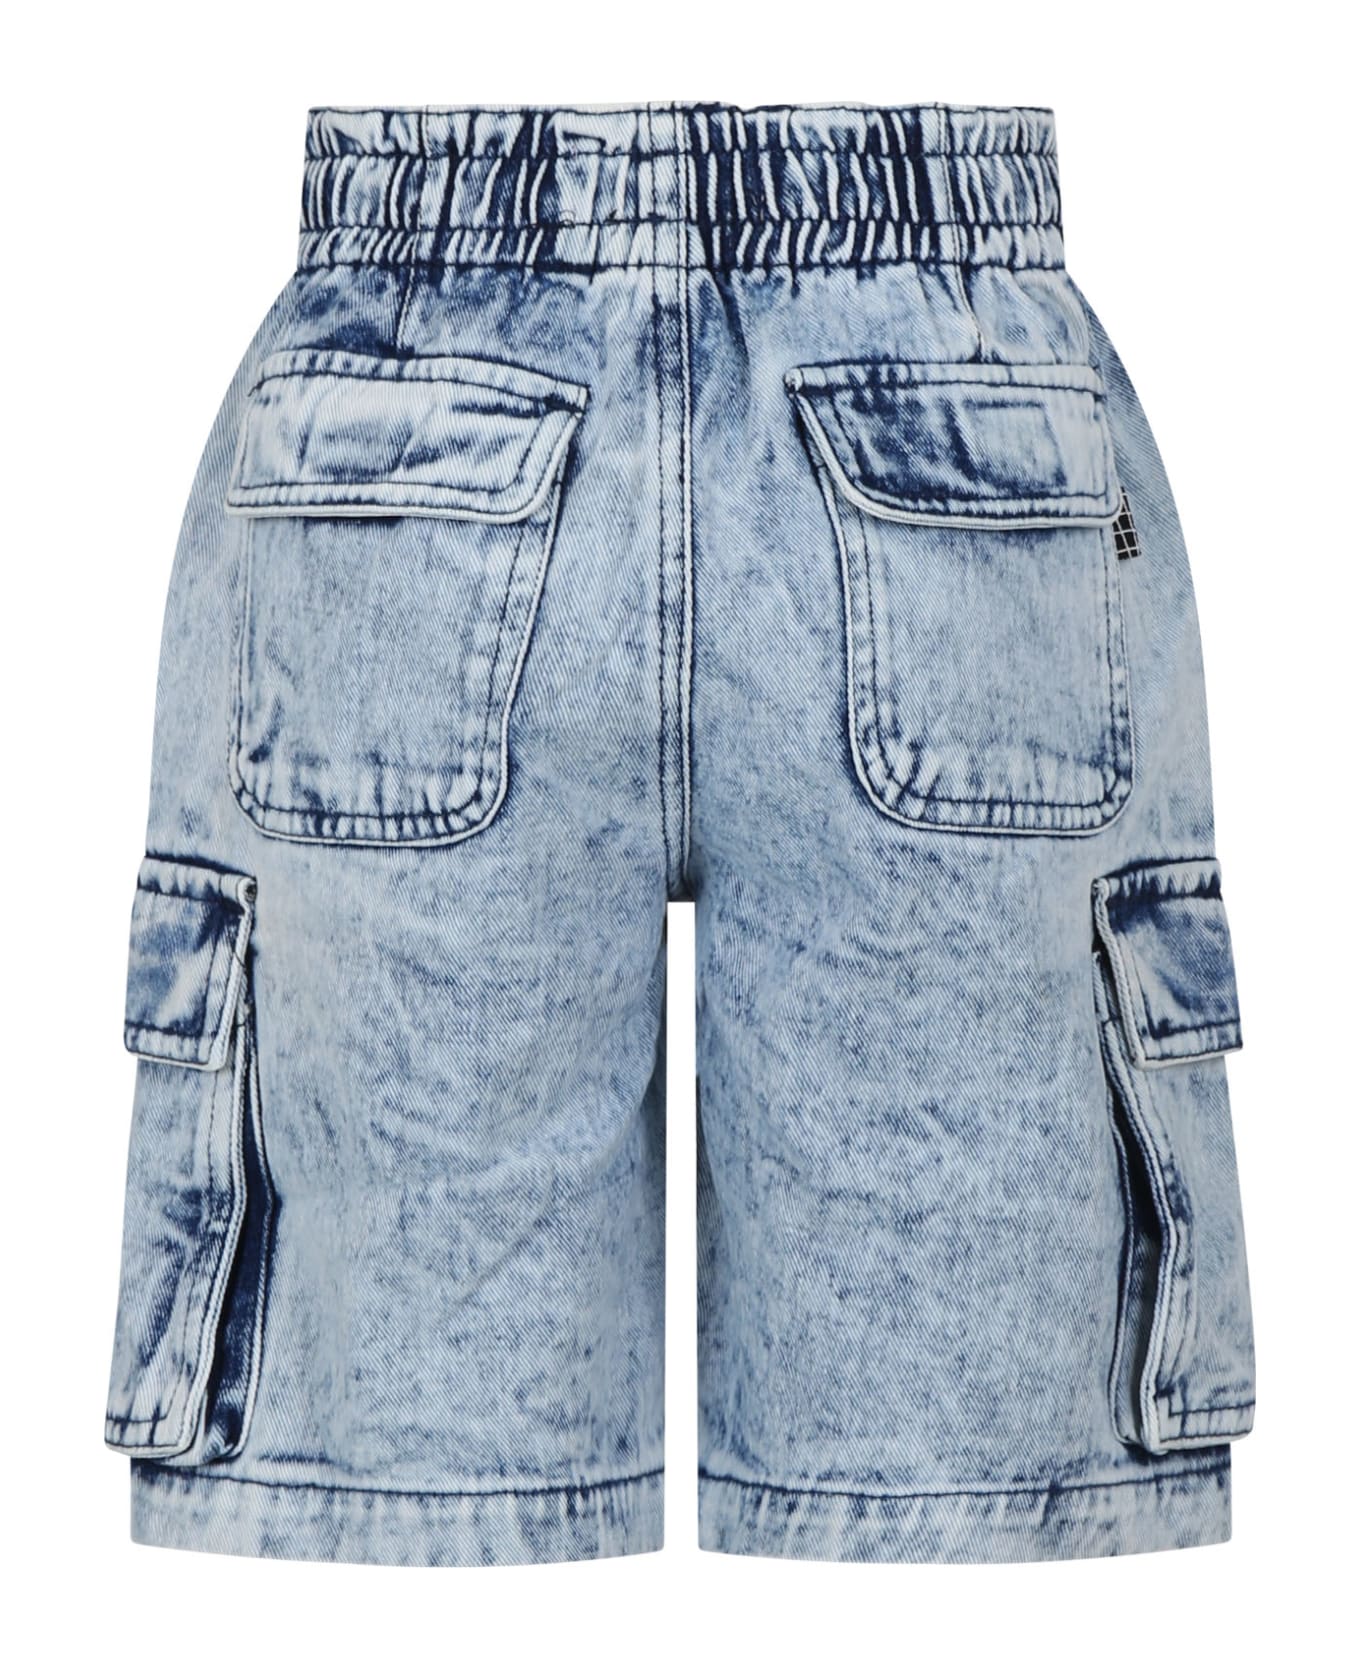 Molo Blue Shorts For Boy - Denim